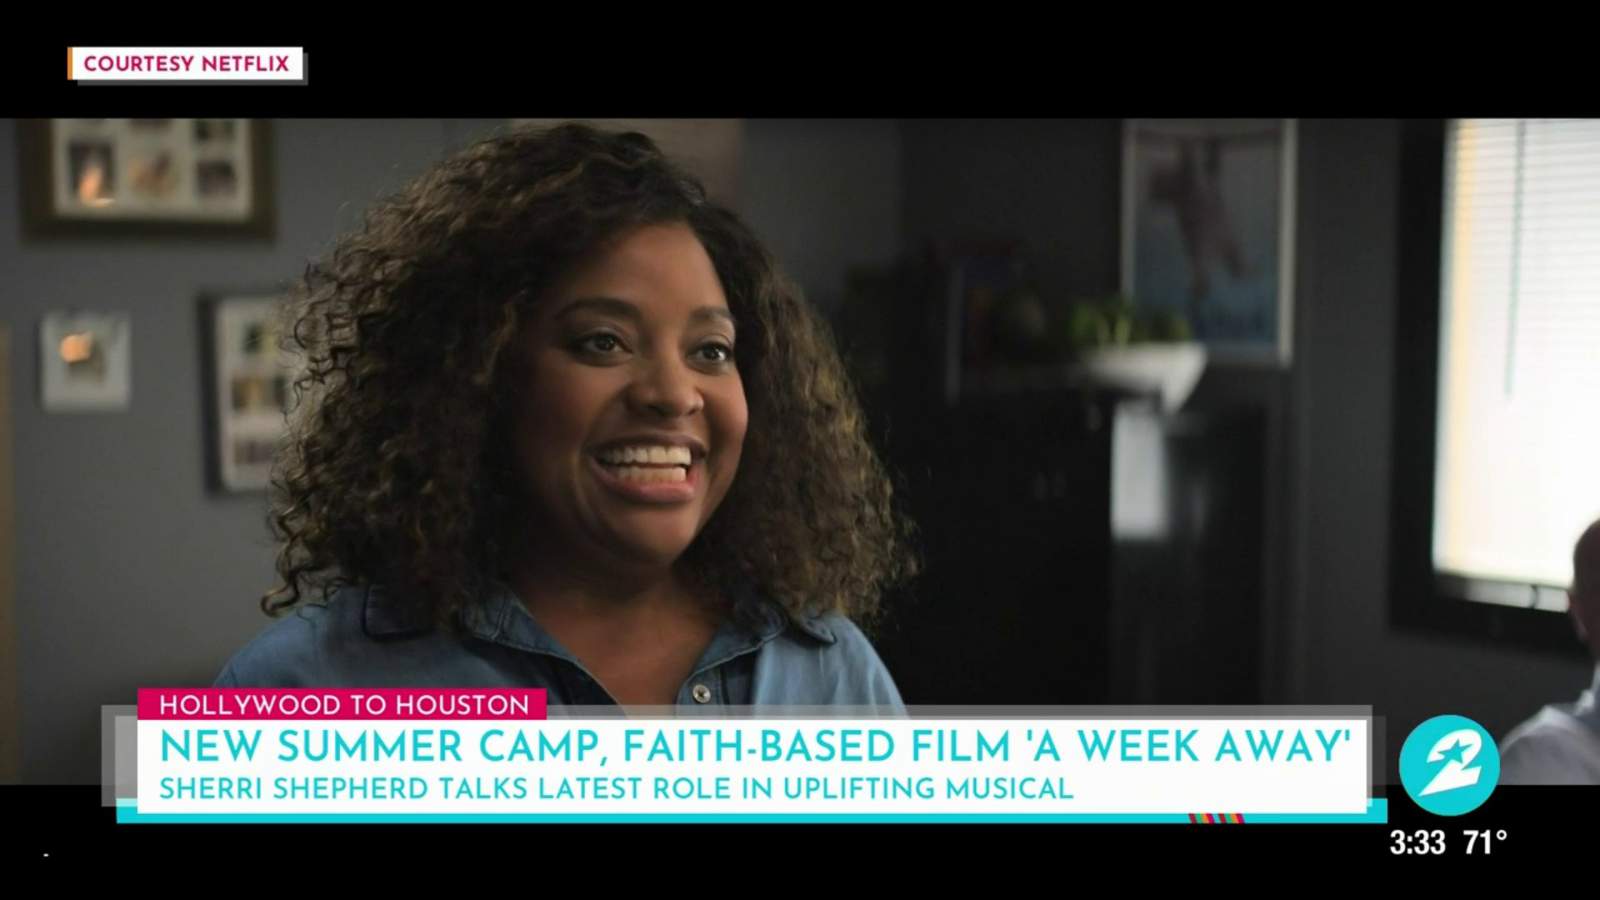 Sherri Shepherd talks new role in Netflix faith-based film ‘A Week Away’